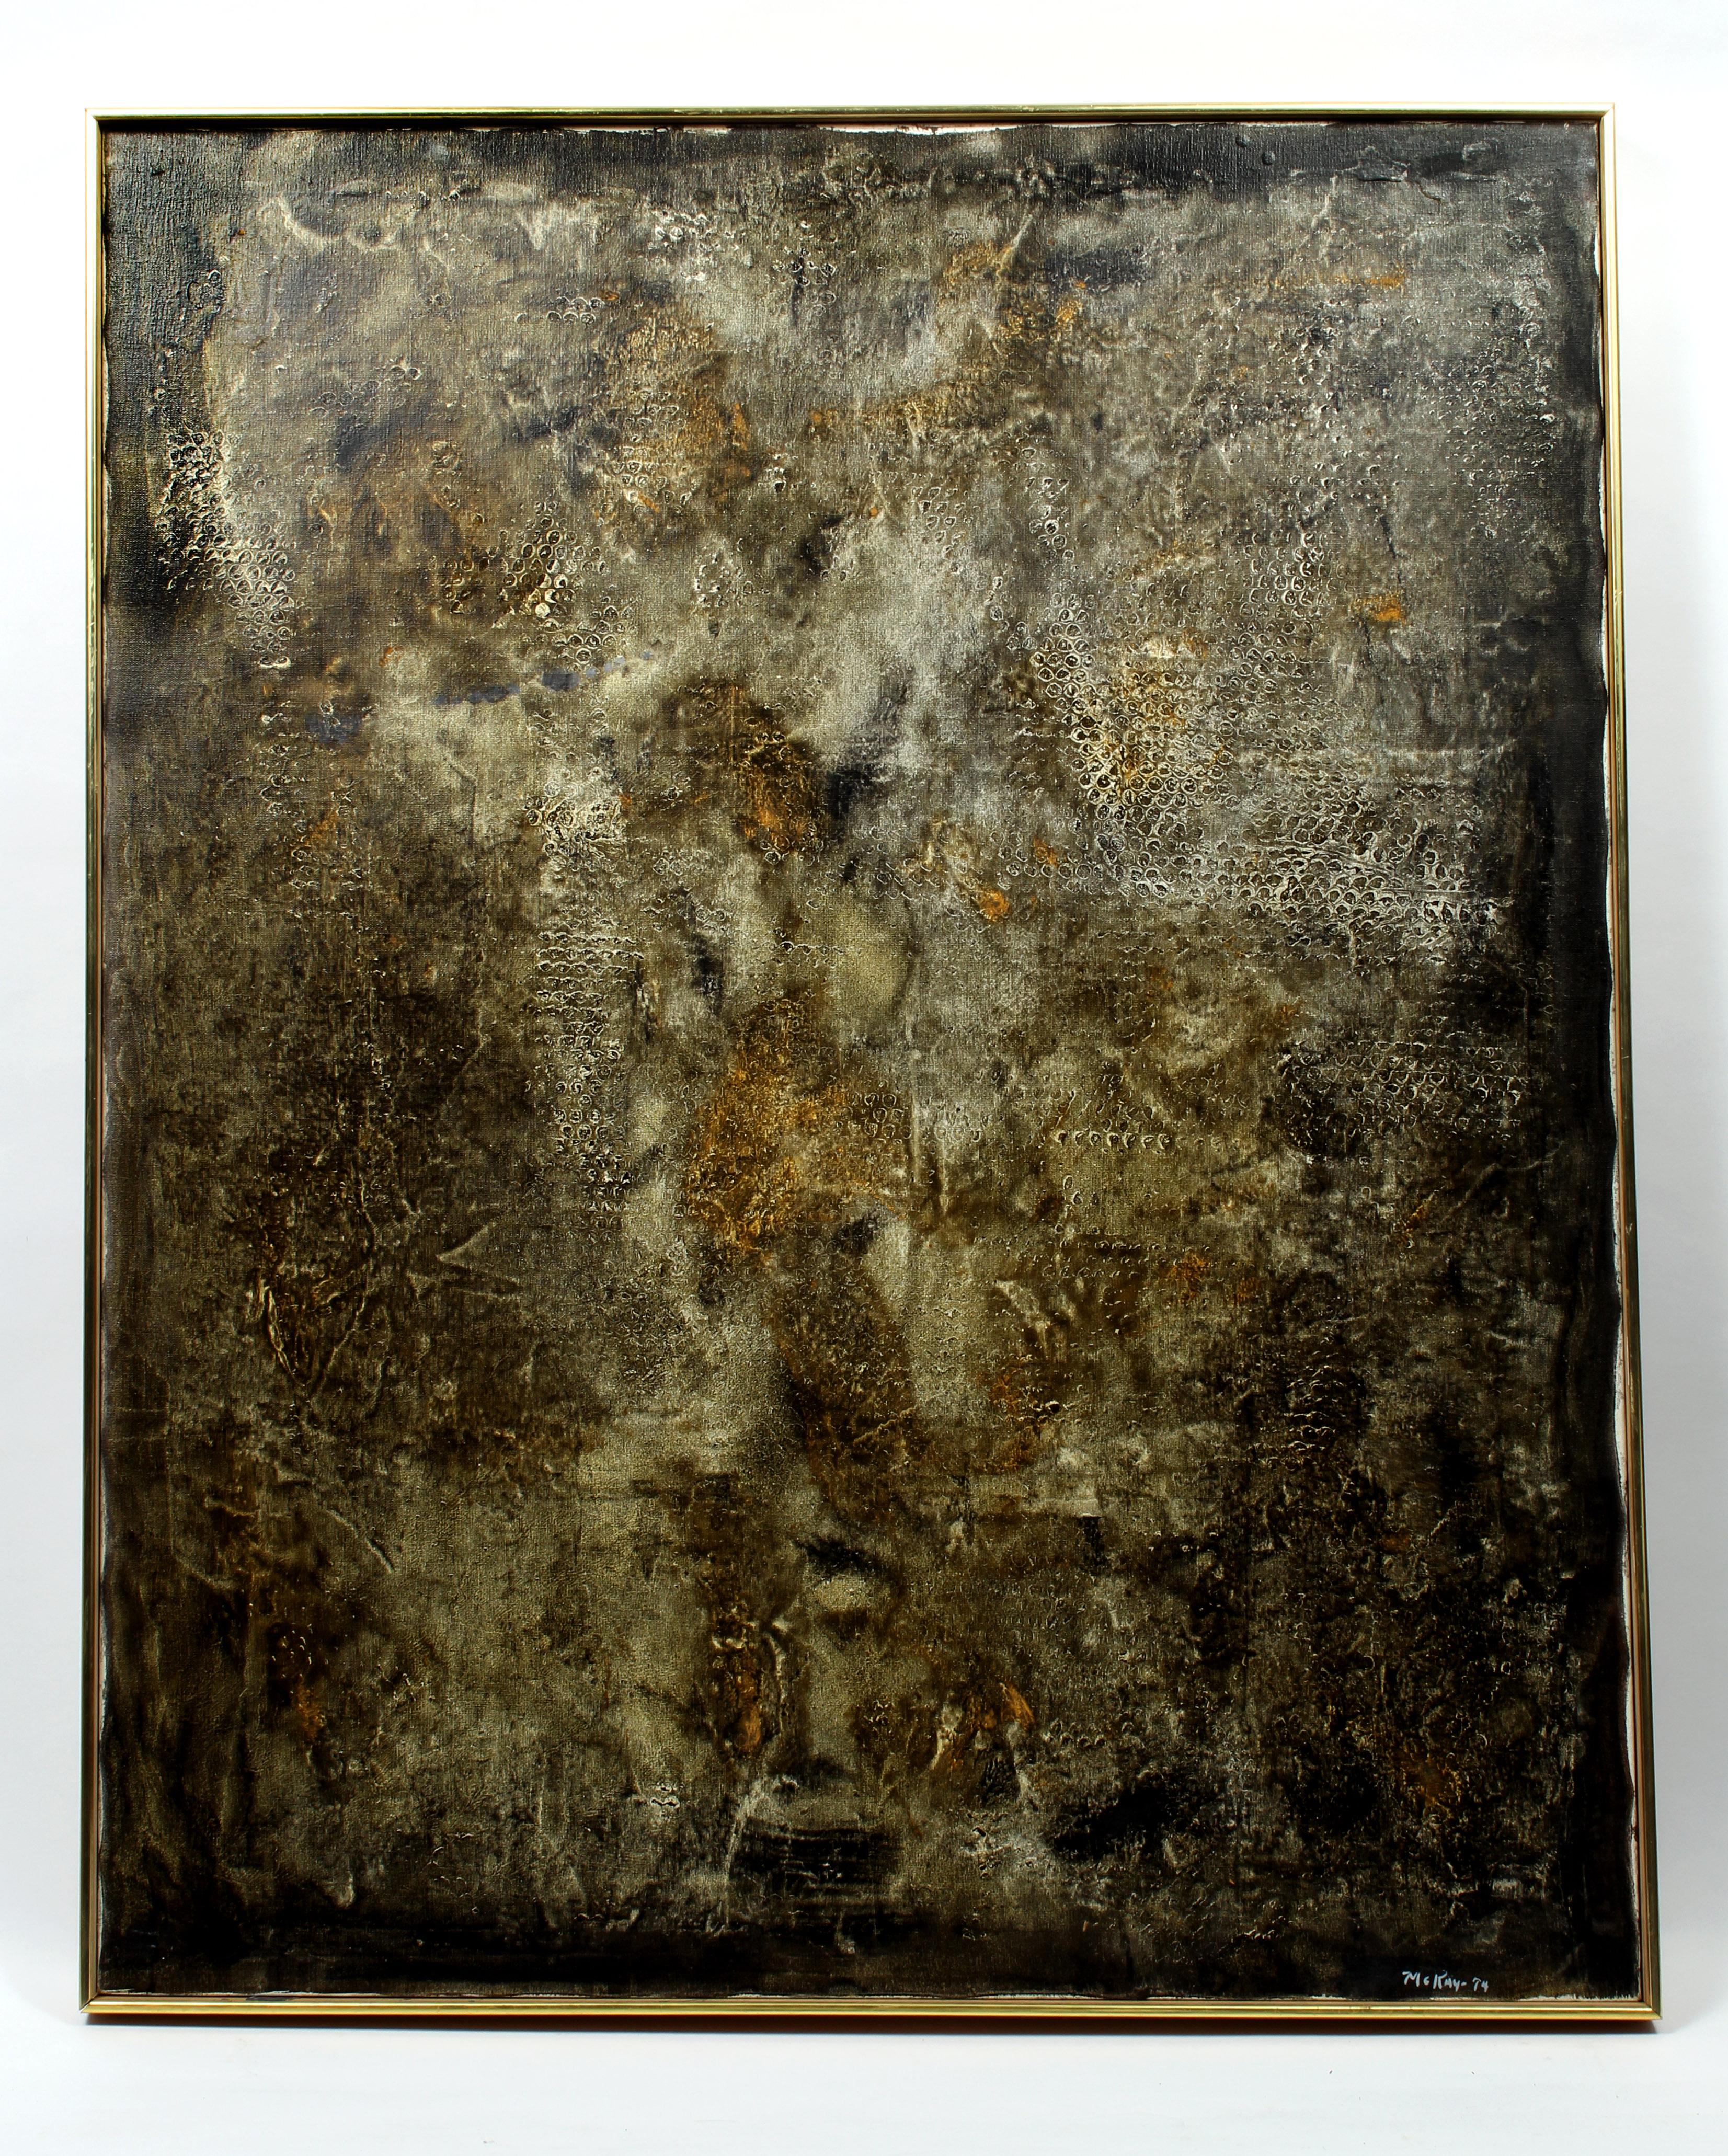 Une peinture à l'huile sur toile lunatique et engageante avec beaucoup de texture et de couches par l'artiste moderniste américaine Martha McKay.

Paris 1951 - 1956
Après avoir obtenu son diplôme de l'école d'art Corcoran à Washington, D.C., en